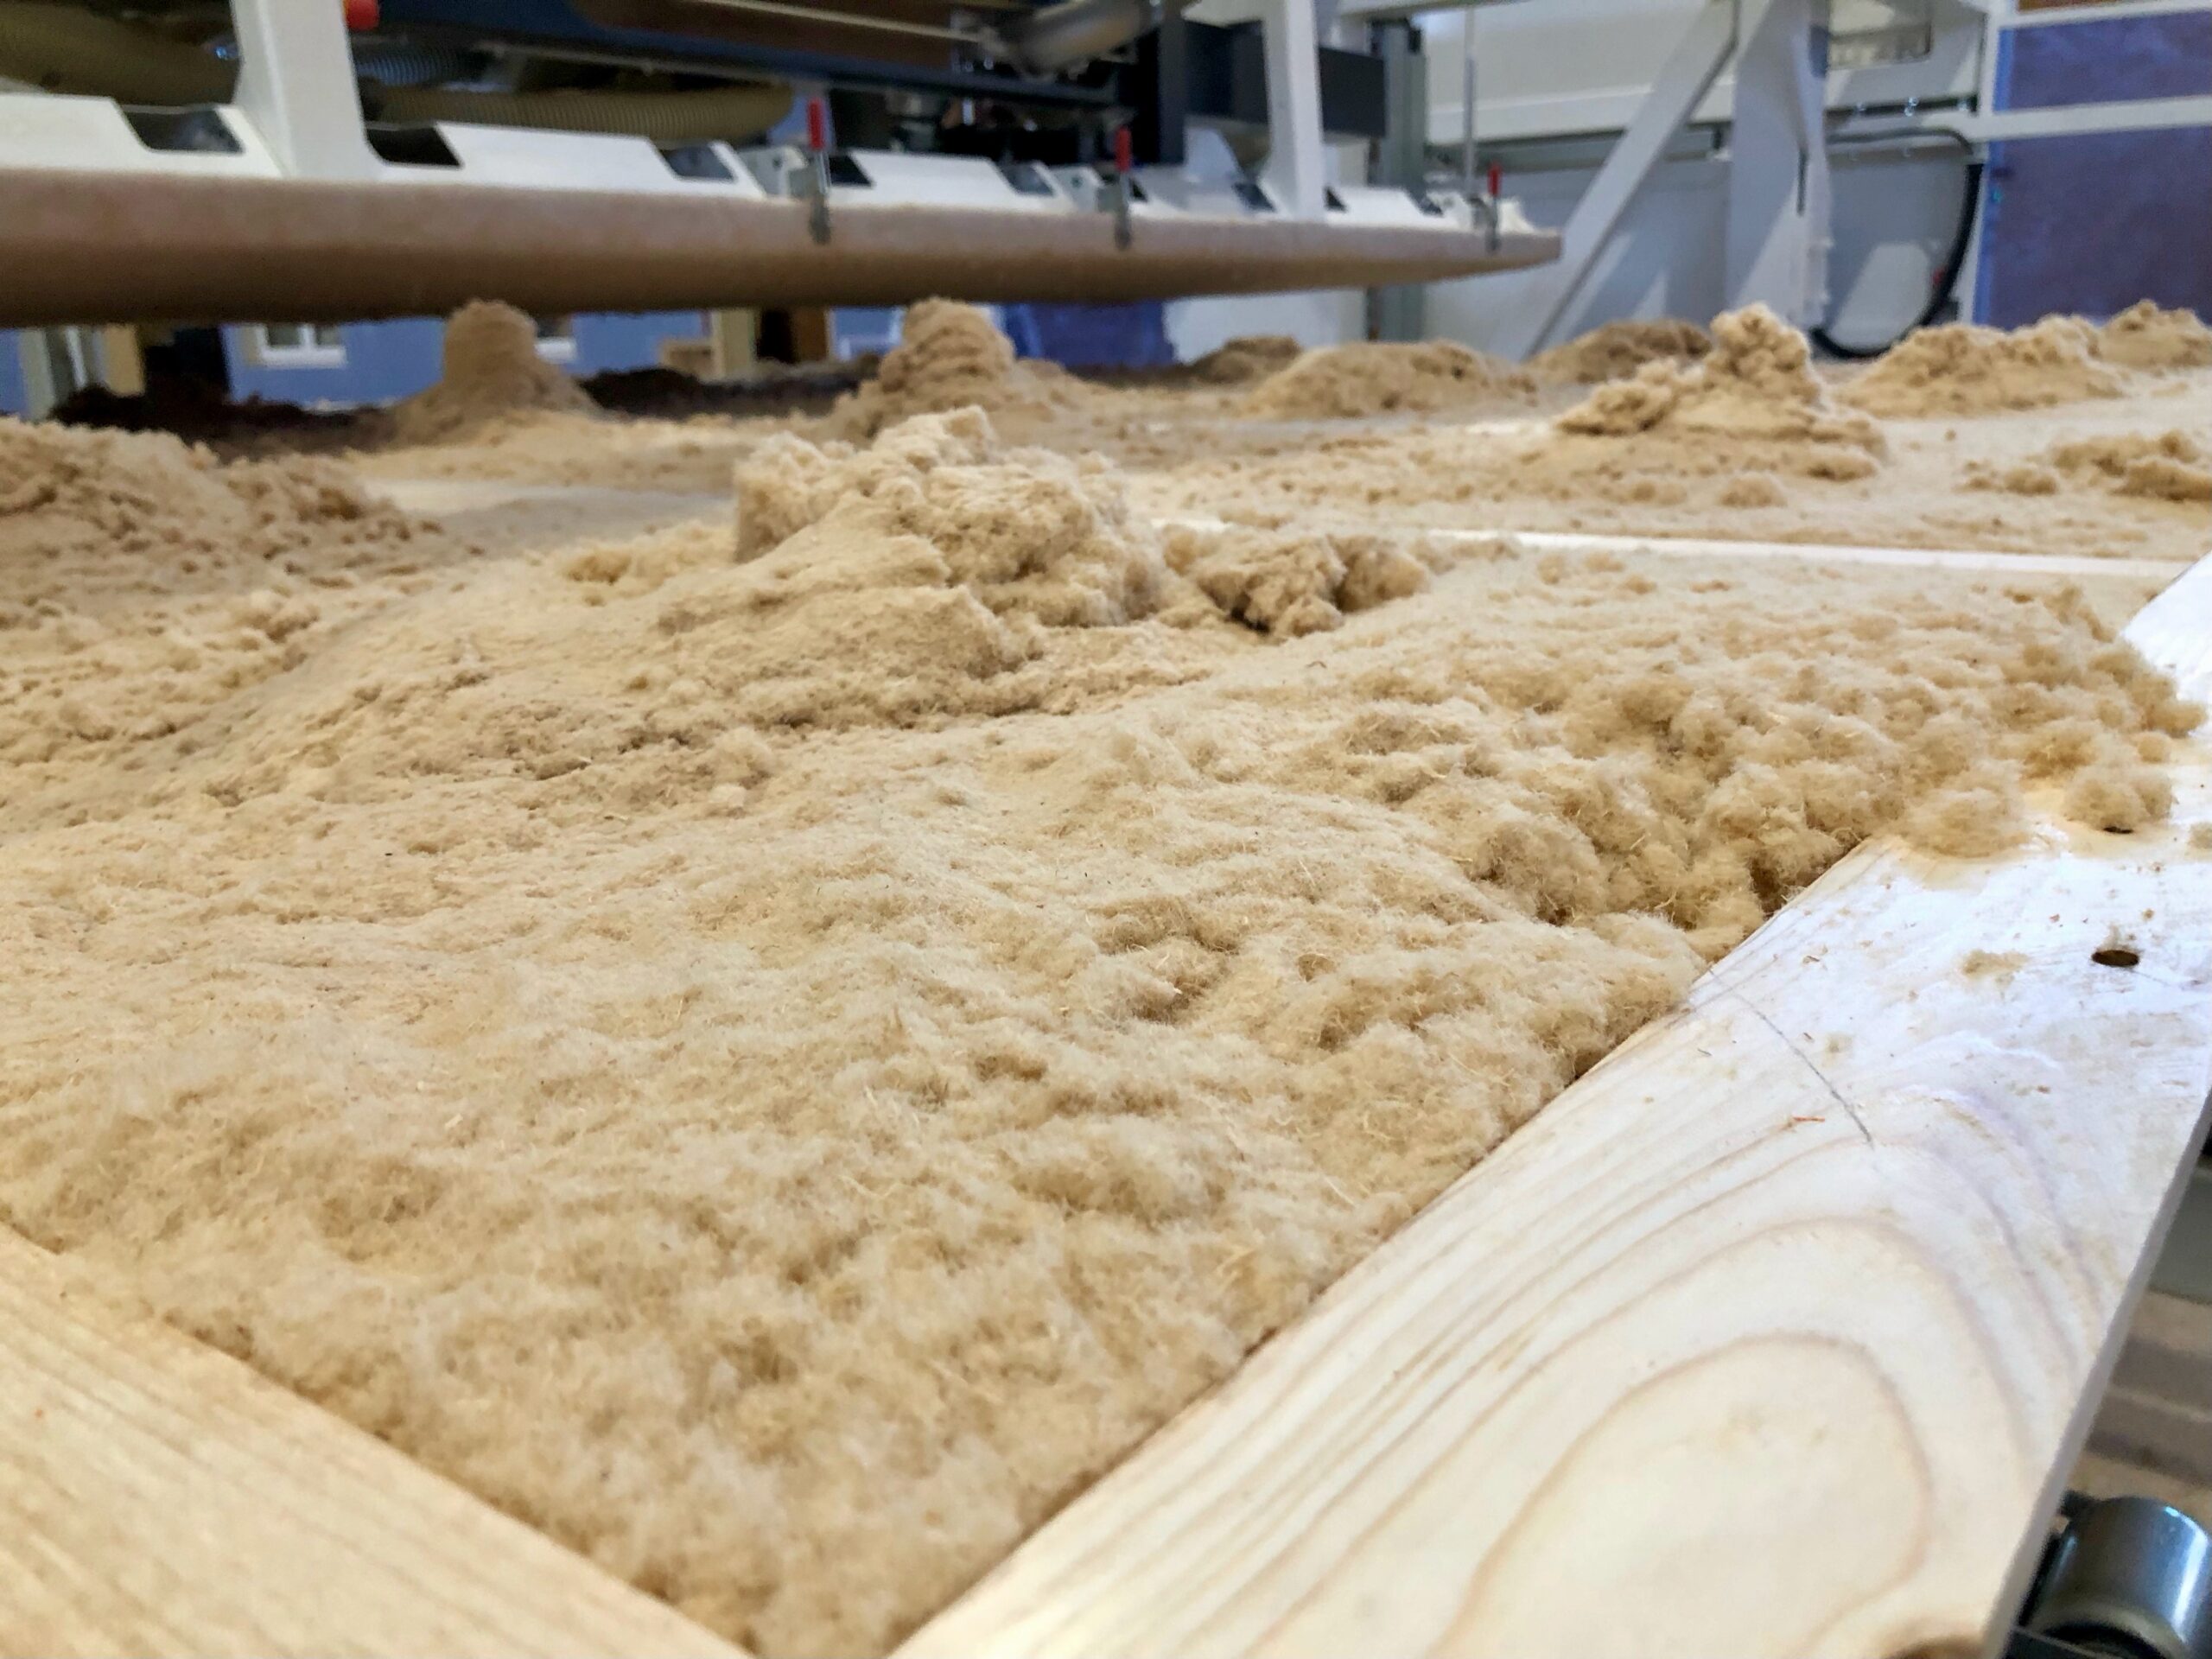 Holzrahmenbau-Dämmung: Die ökologische Einblasdämmung aus Holzfaser ermöglicht laut Hersteller das "formatvariable Dämmen von Hohlräumen" (Foto: Eric Sturm)